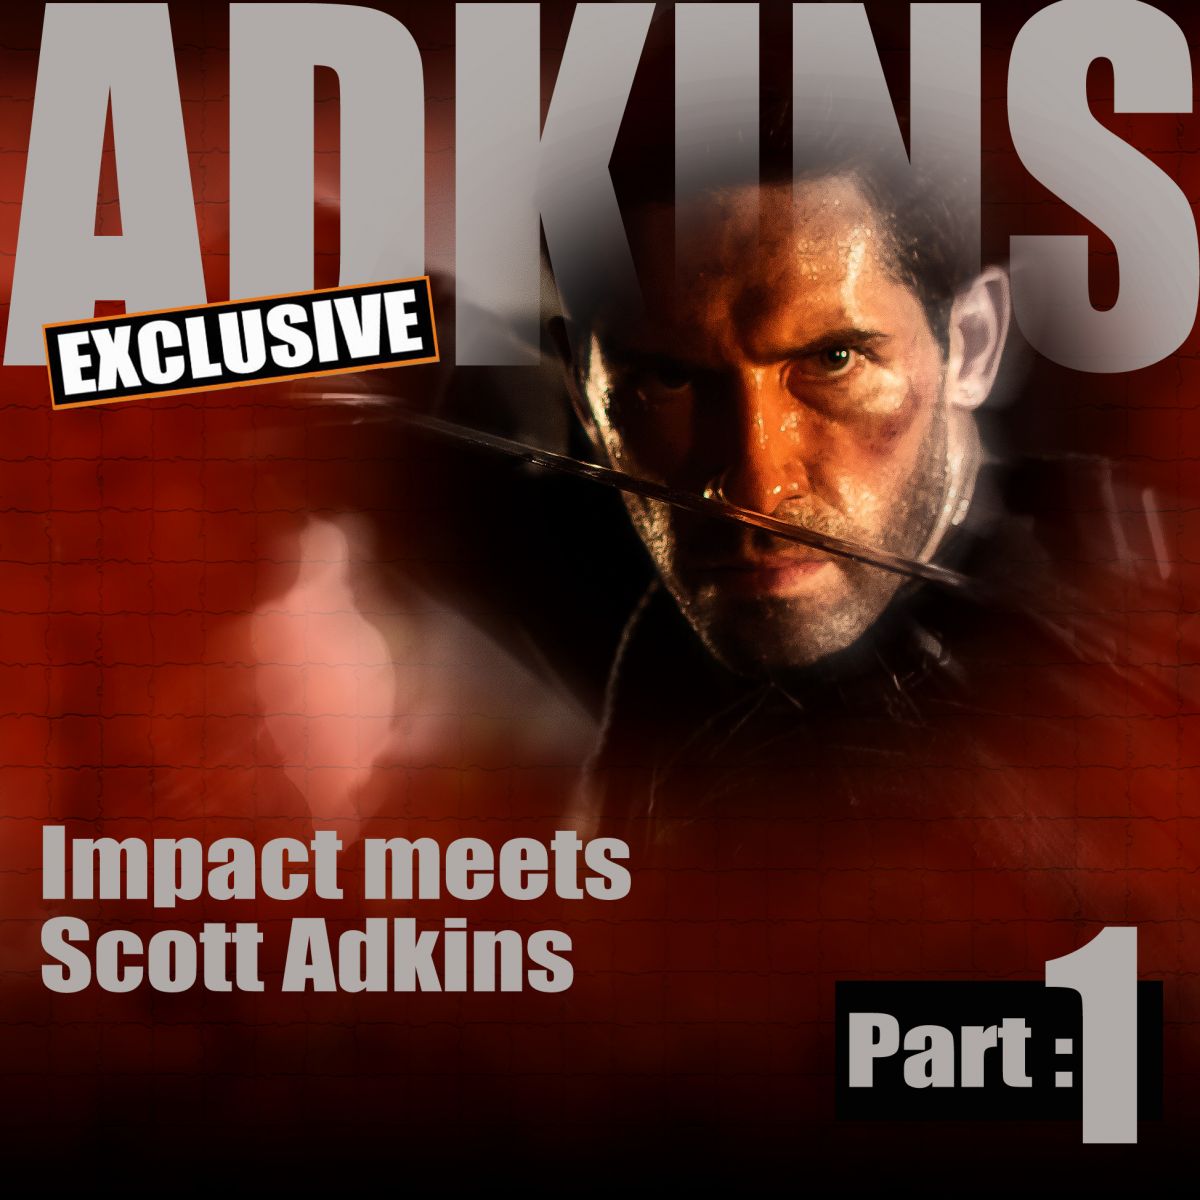 Exclusive Scott Adkins interview